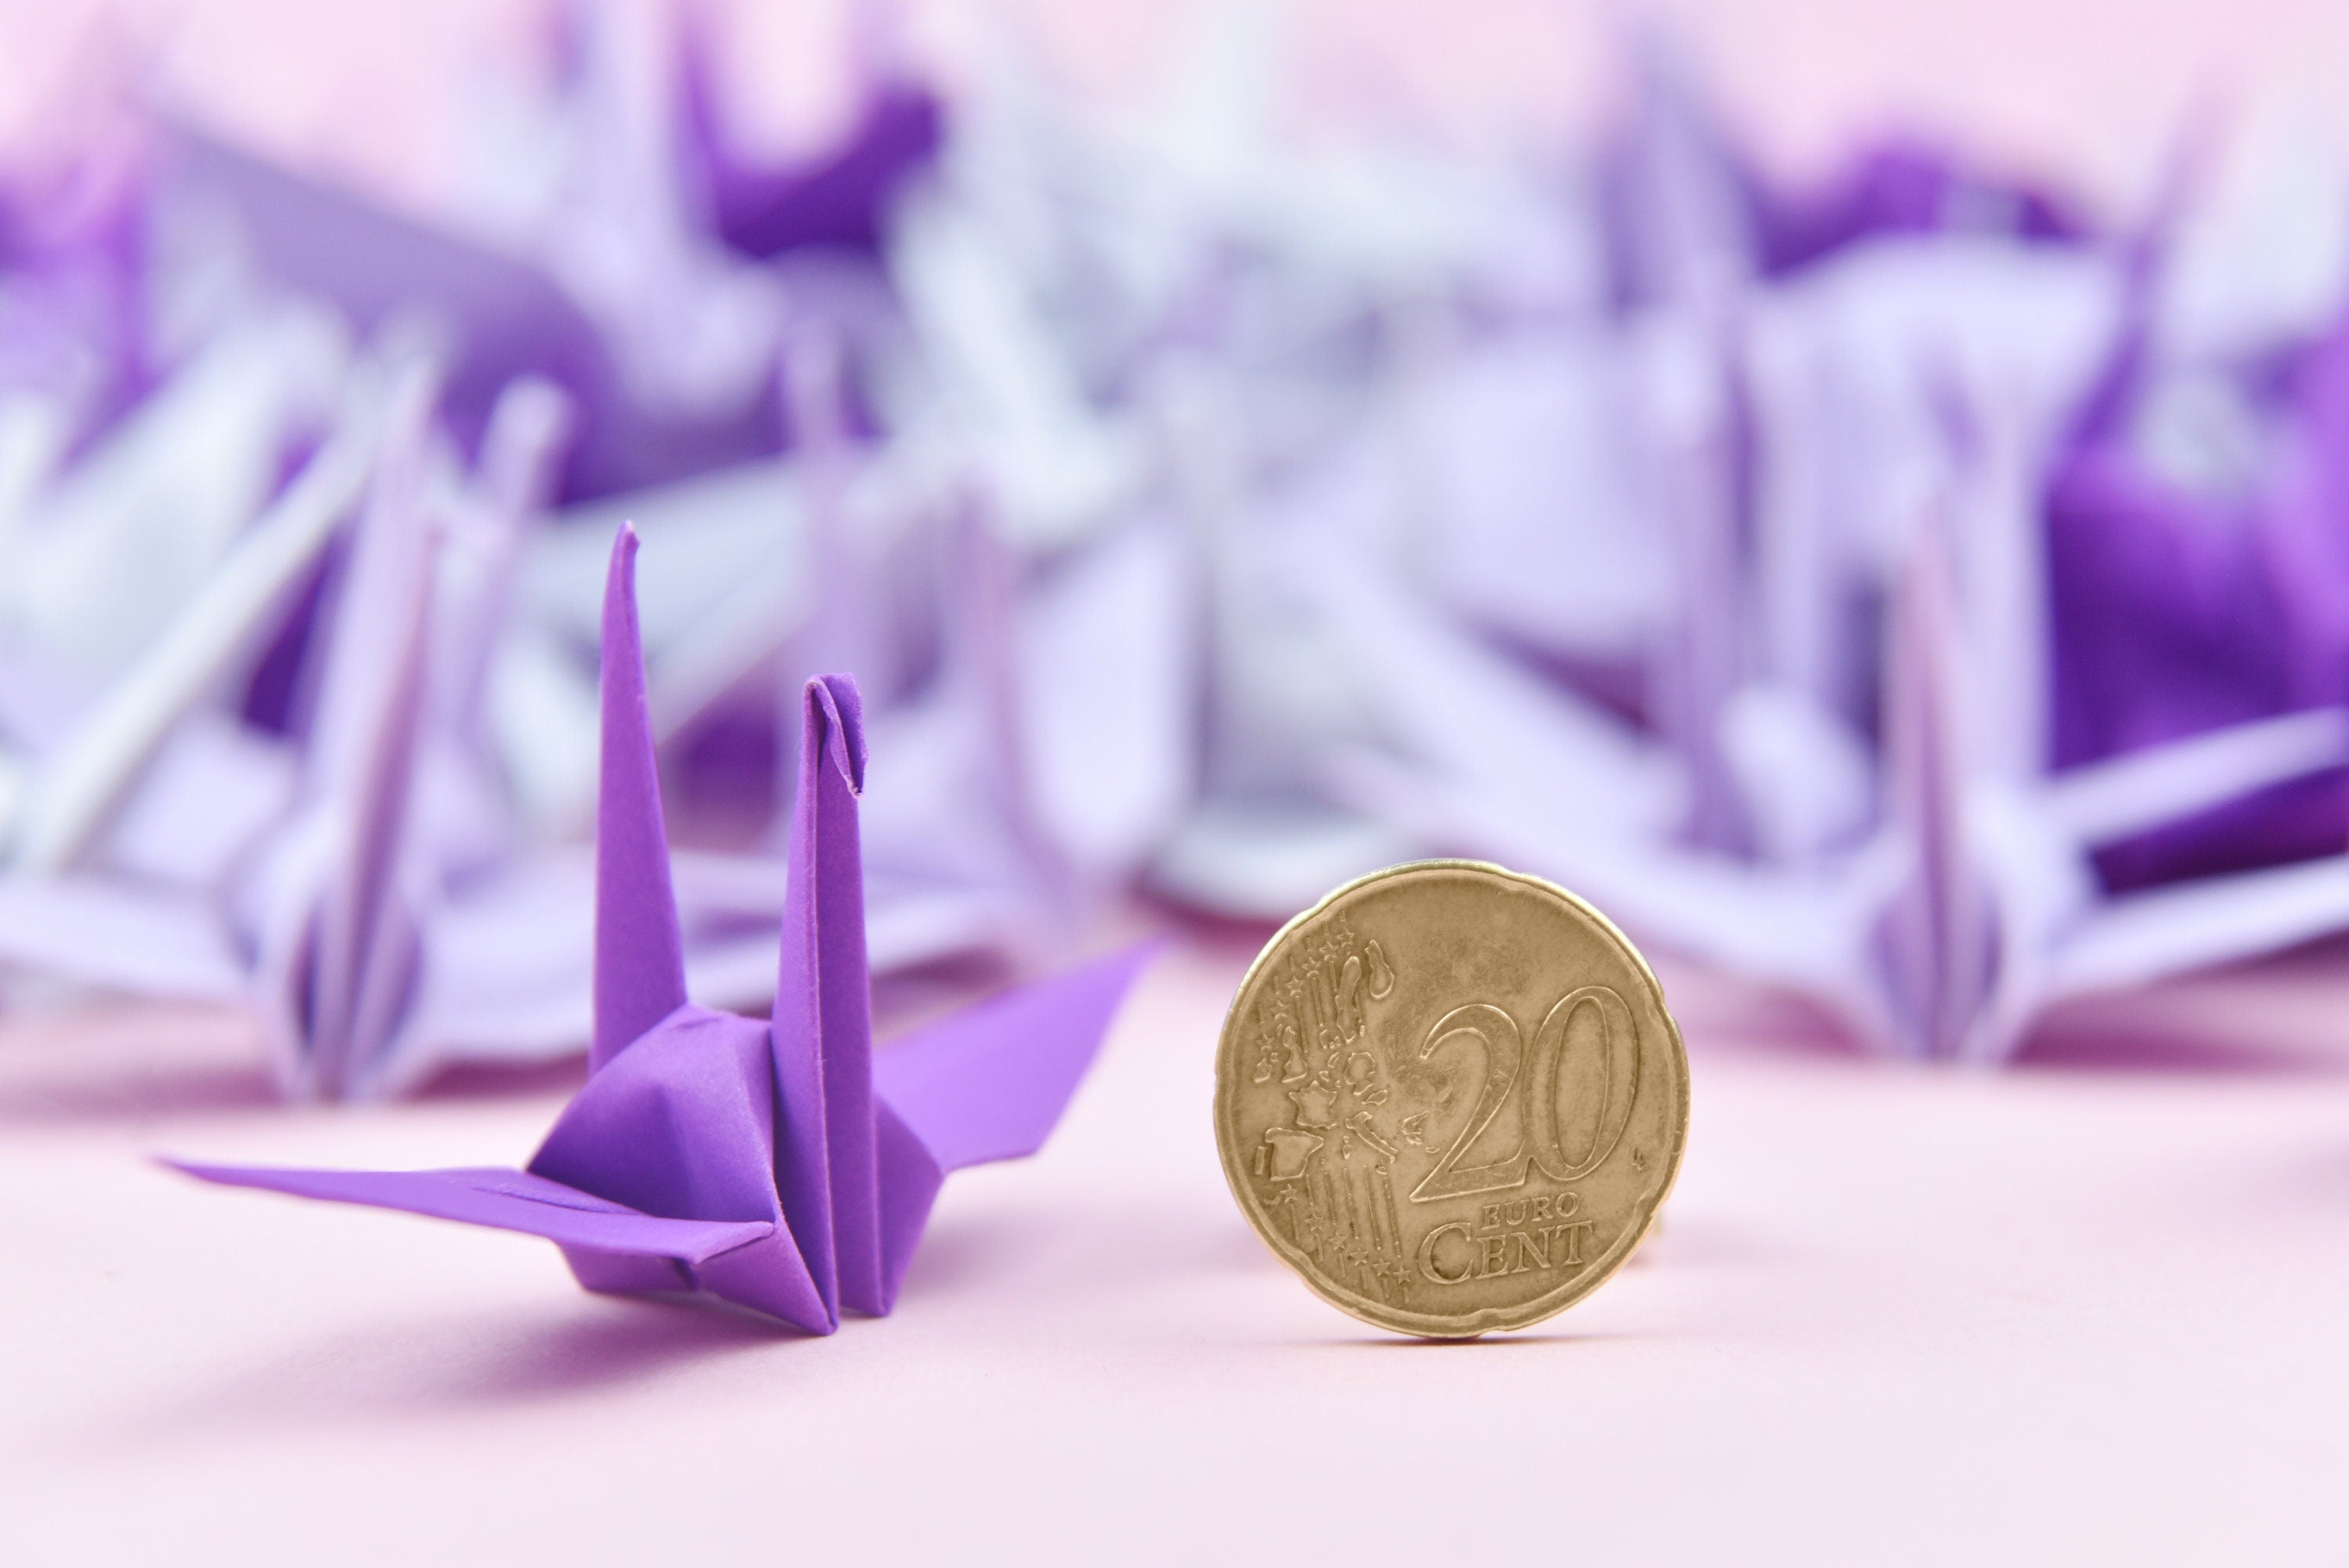 1000 Grúa de papel de origami tono púrpura - 3x3 pulgadas - Prefabricado - Grúa de origami para decoración de bodas, regalo de aniversario, San Valentín, telón de fondo